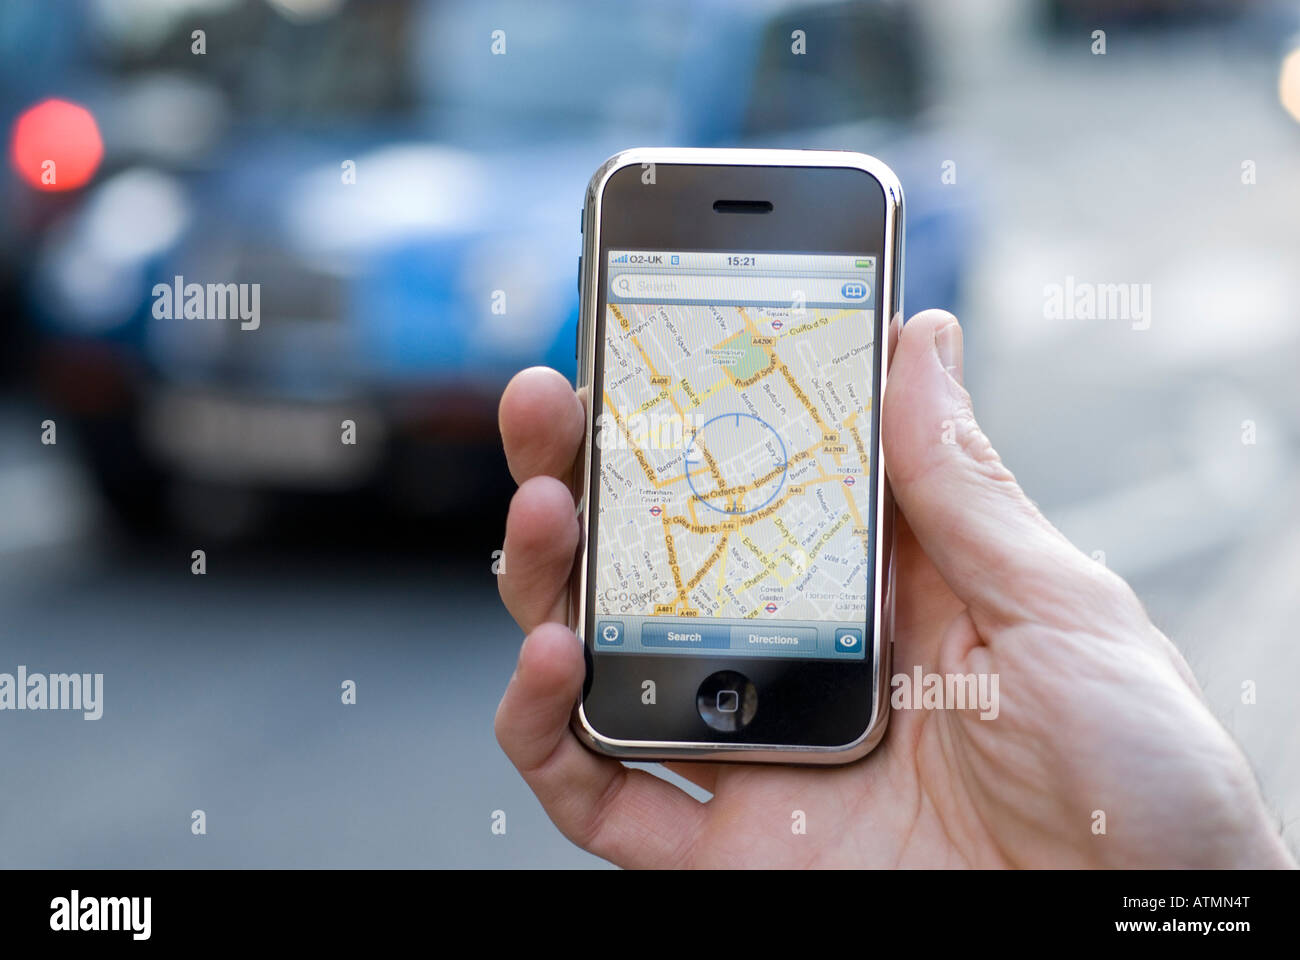 Google maps sur Apple iPhone indiquant l'emplacement de l'utilisateur, London, England, UK Banque D'Images